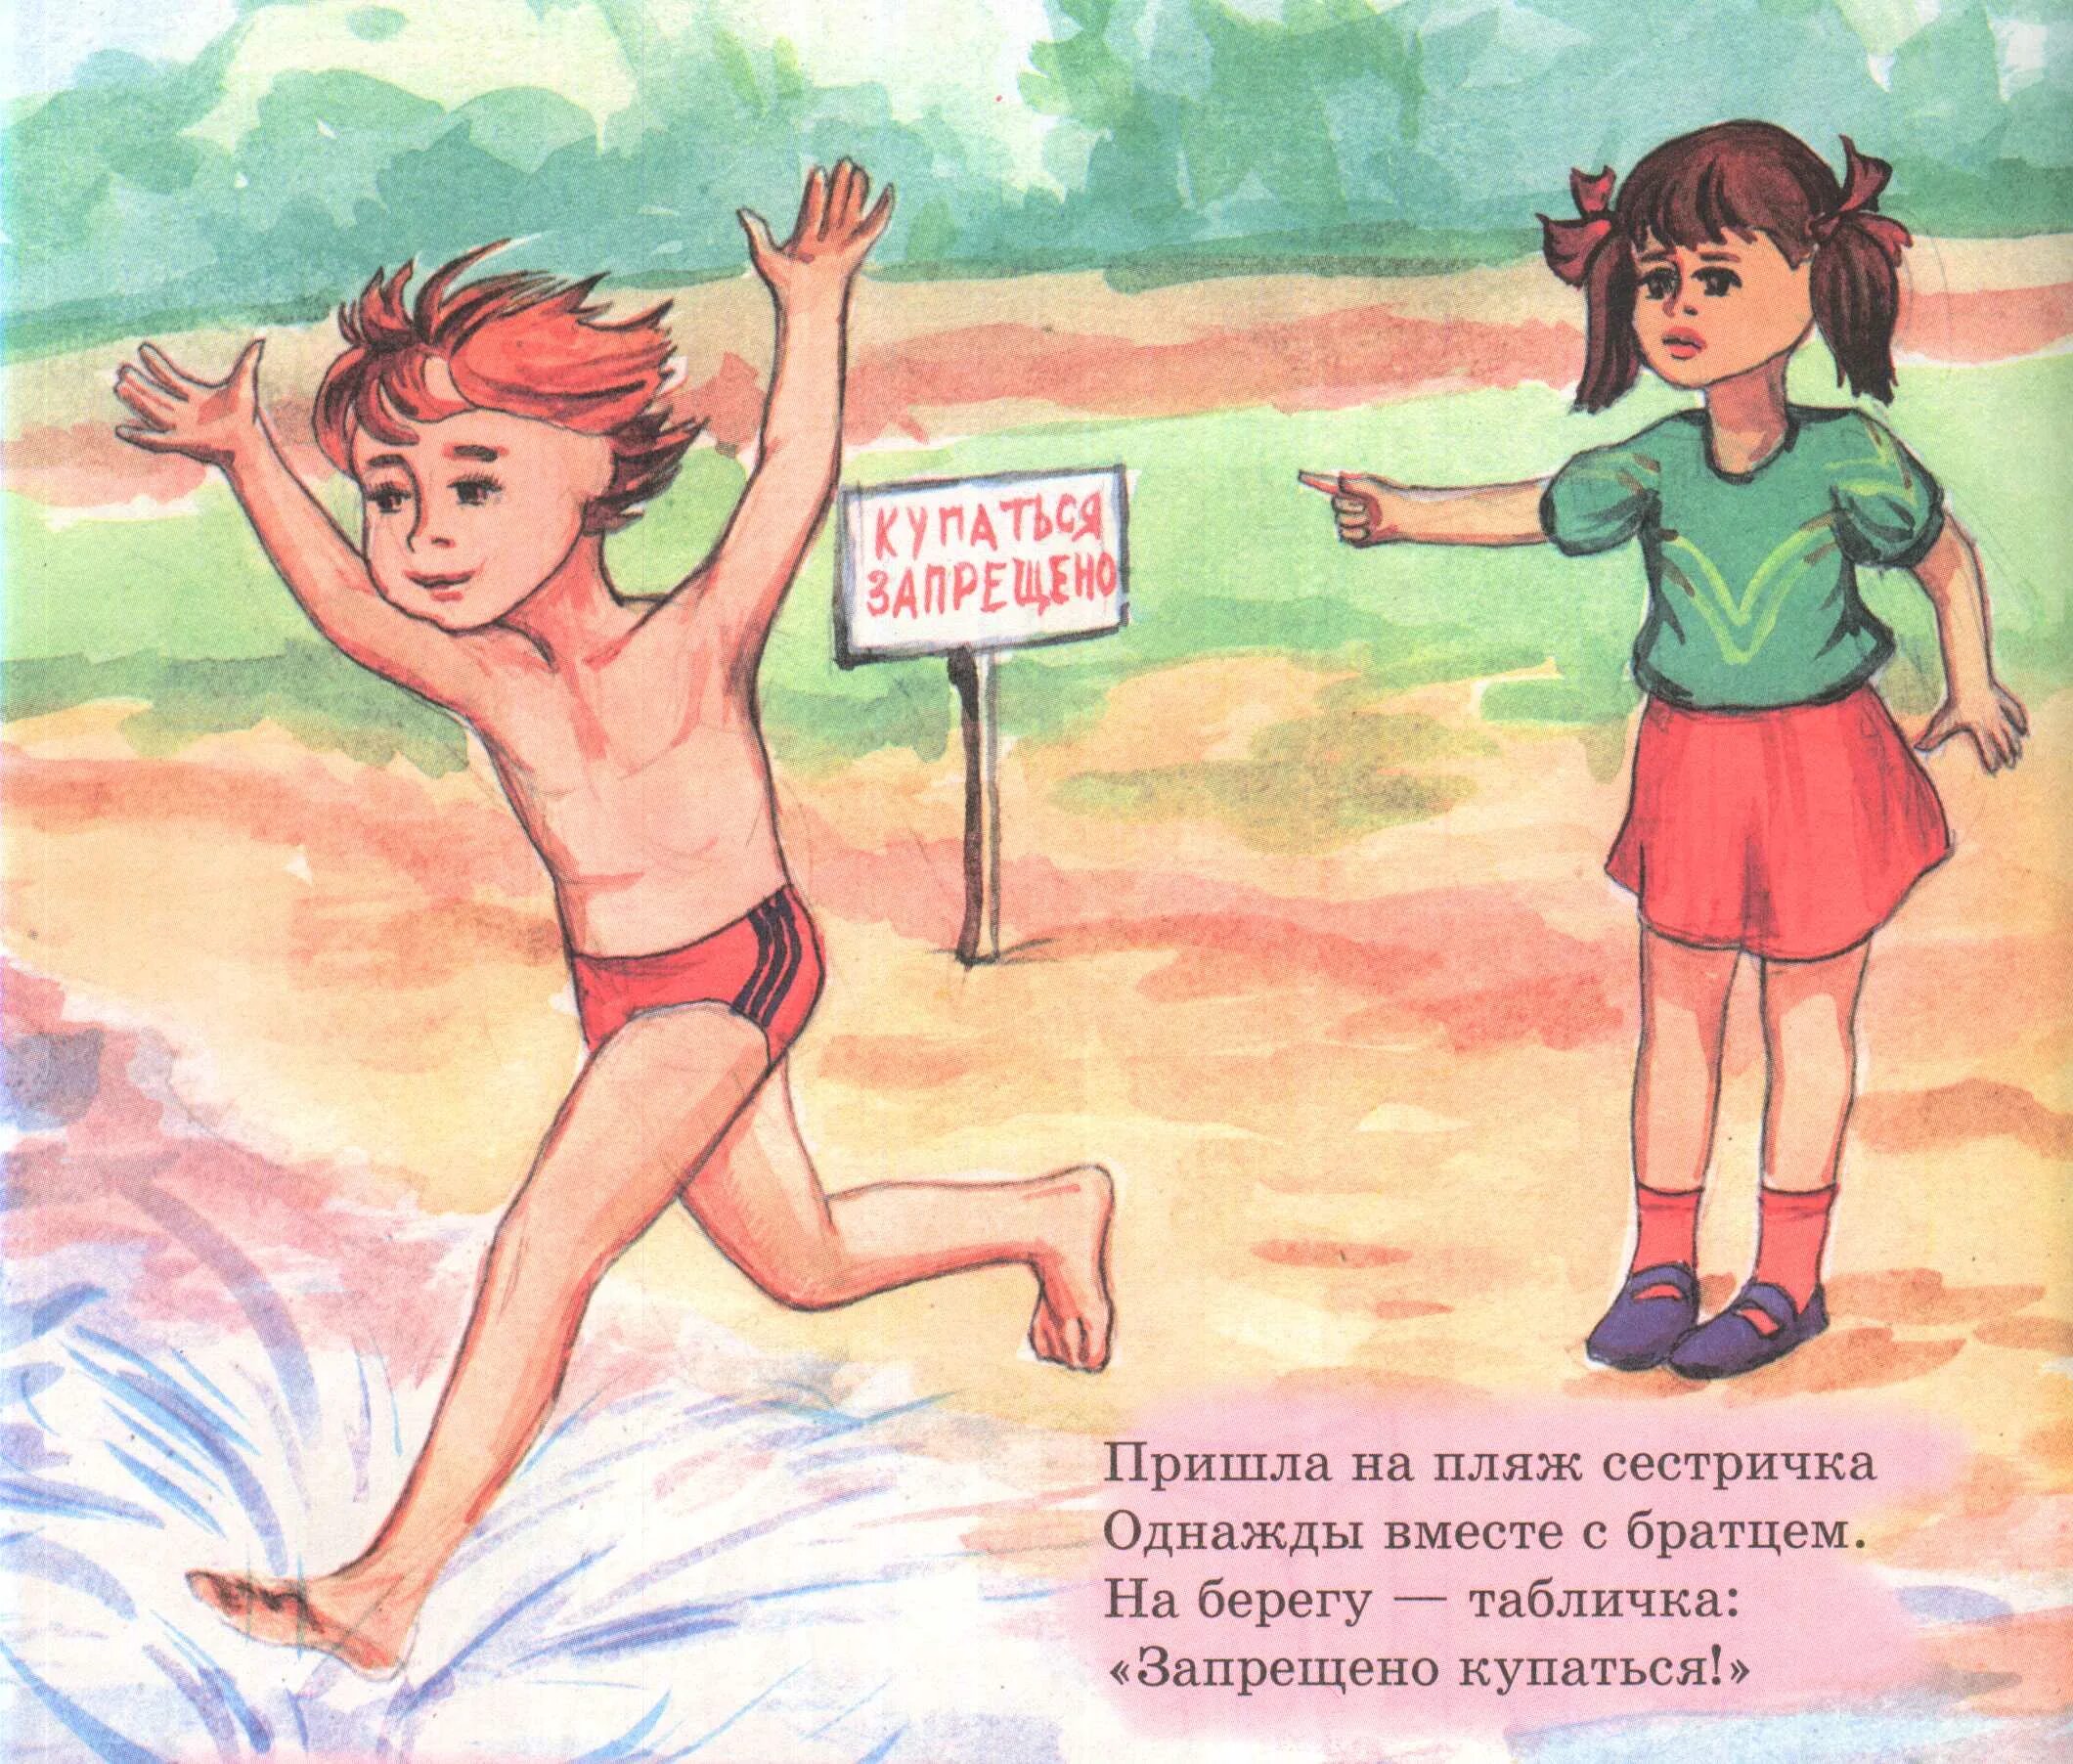 Как написать купаться. Купаться запрещено рисунок. Купание запрещено табличка. Плакат купание запрещено. Детям купаться запрещено.